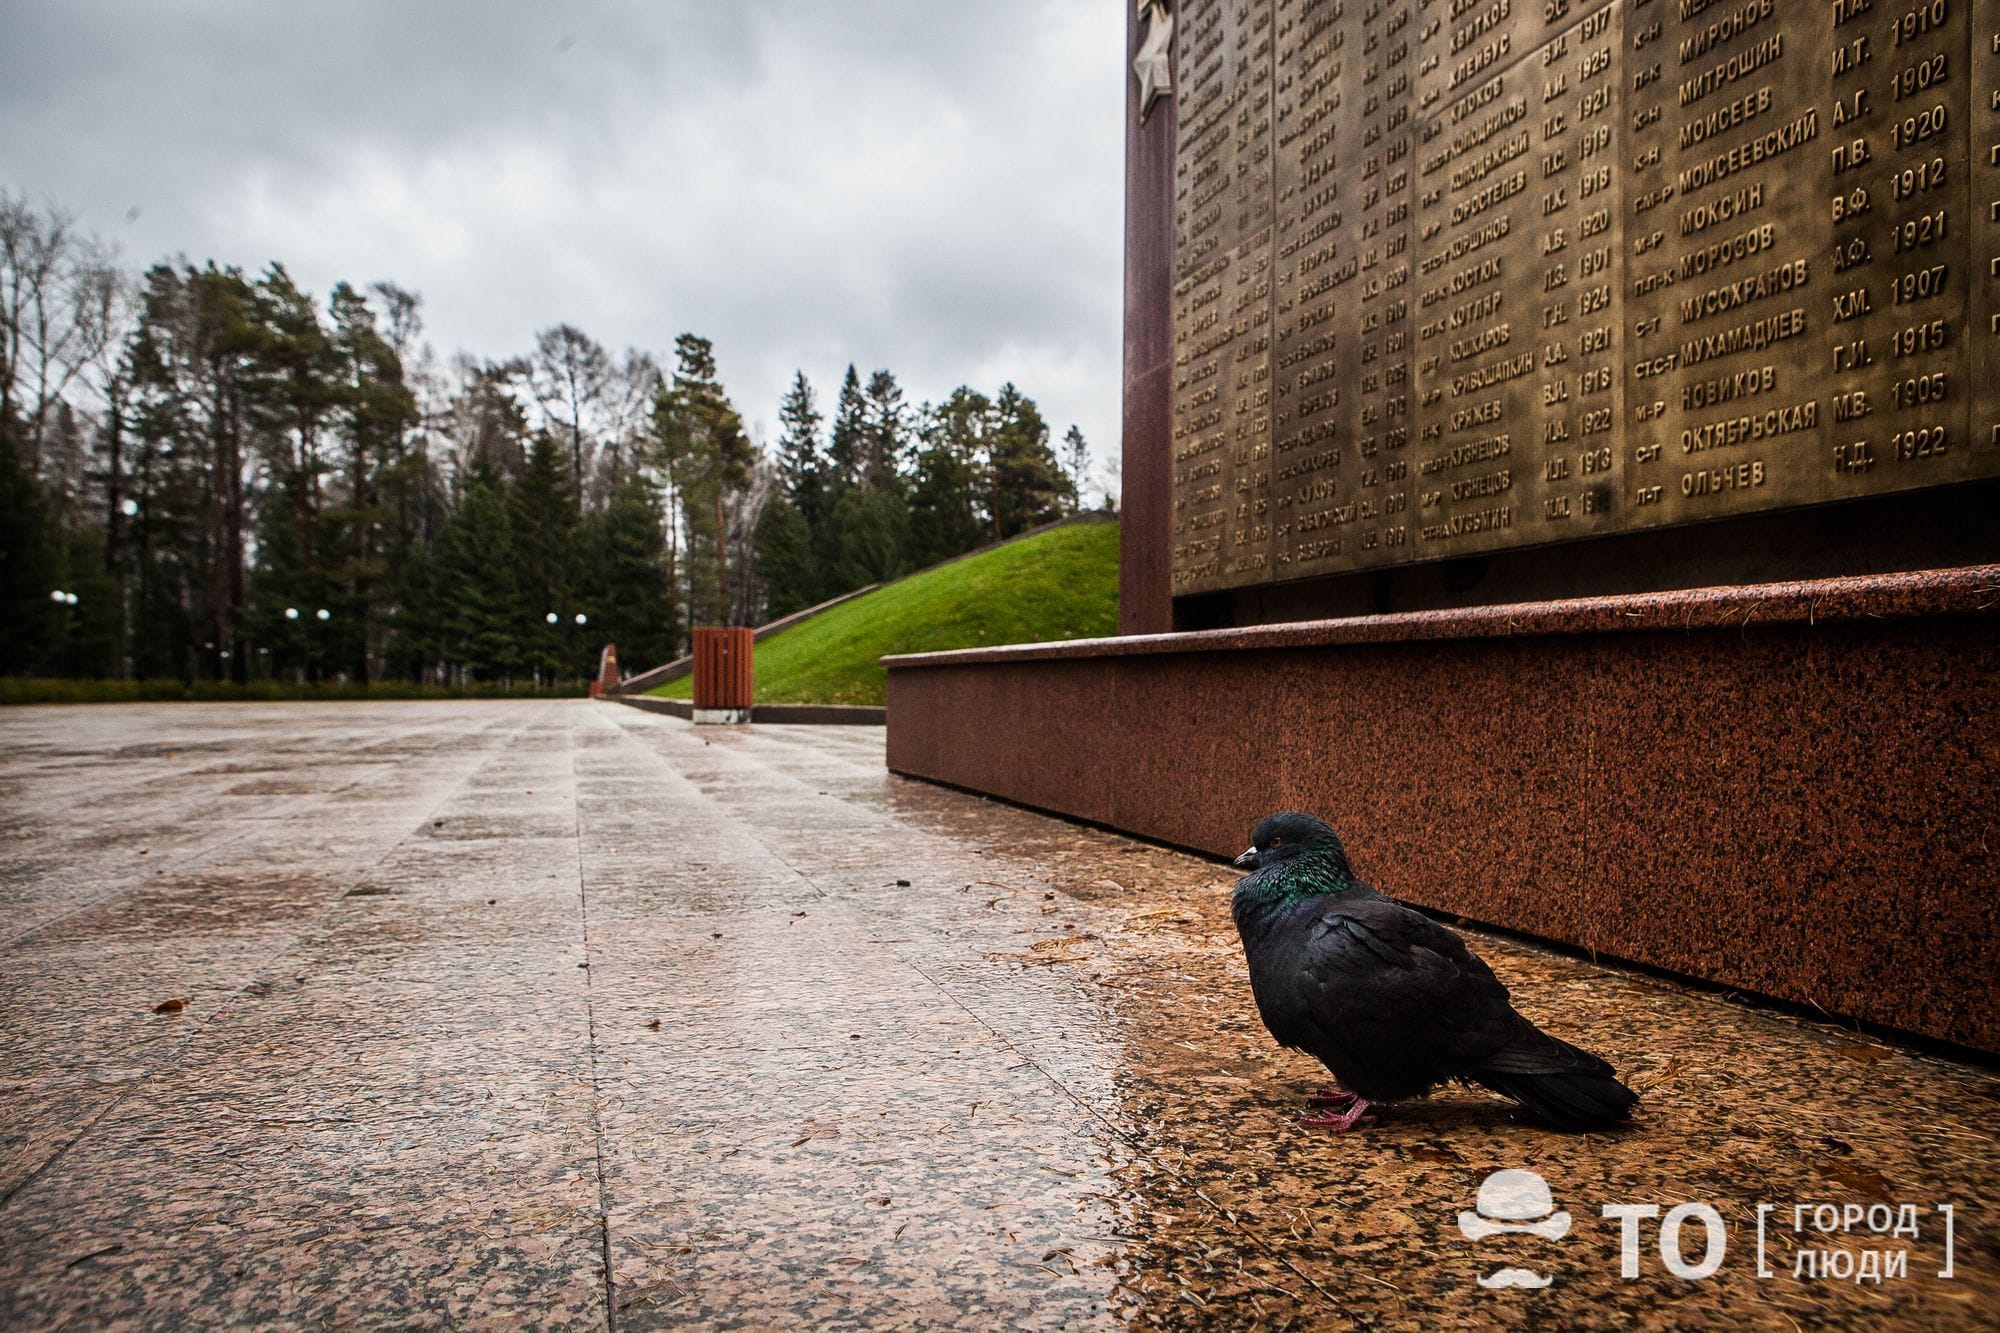 Город, Томские новости, голуби кормить птиц запрещено можно ли кормить голубей птицы в общественных местах Несмотря на морозы томичам советуют не кормить голубей в общественных местах